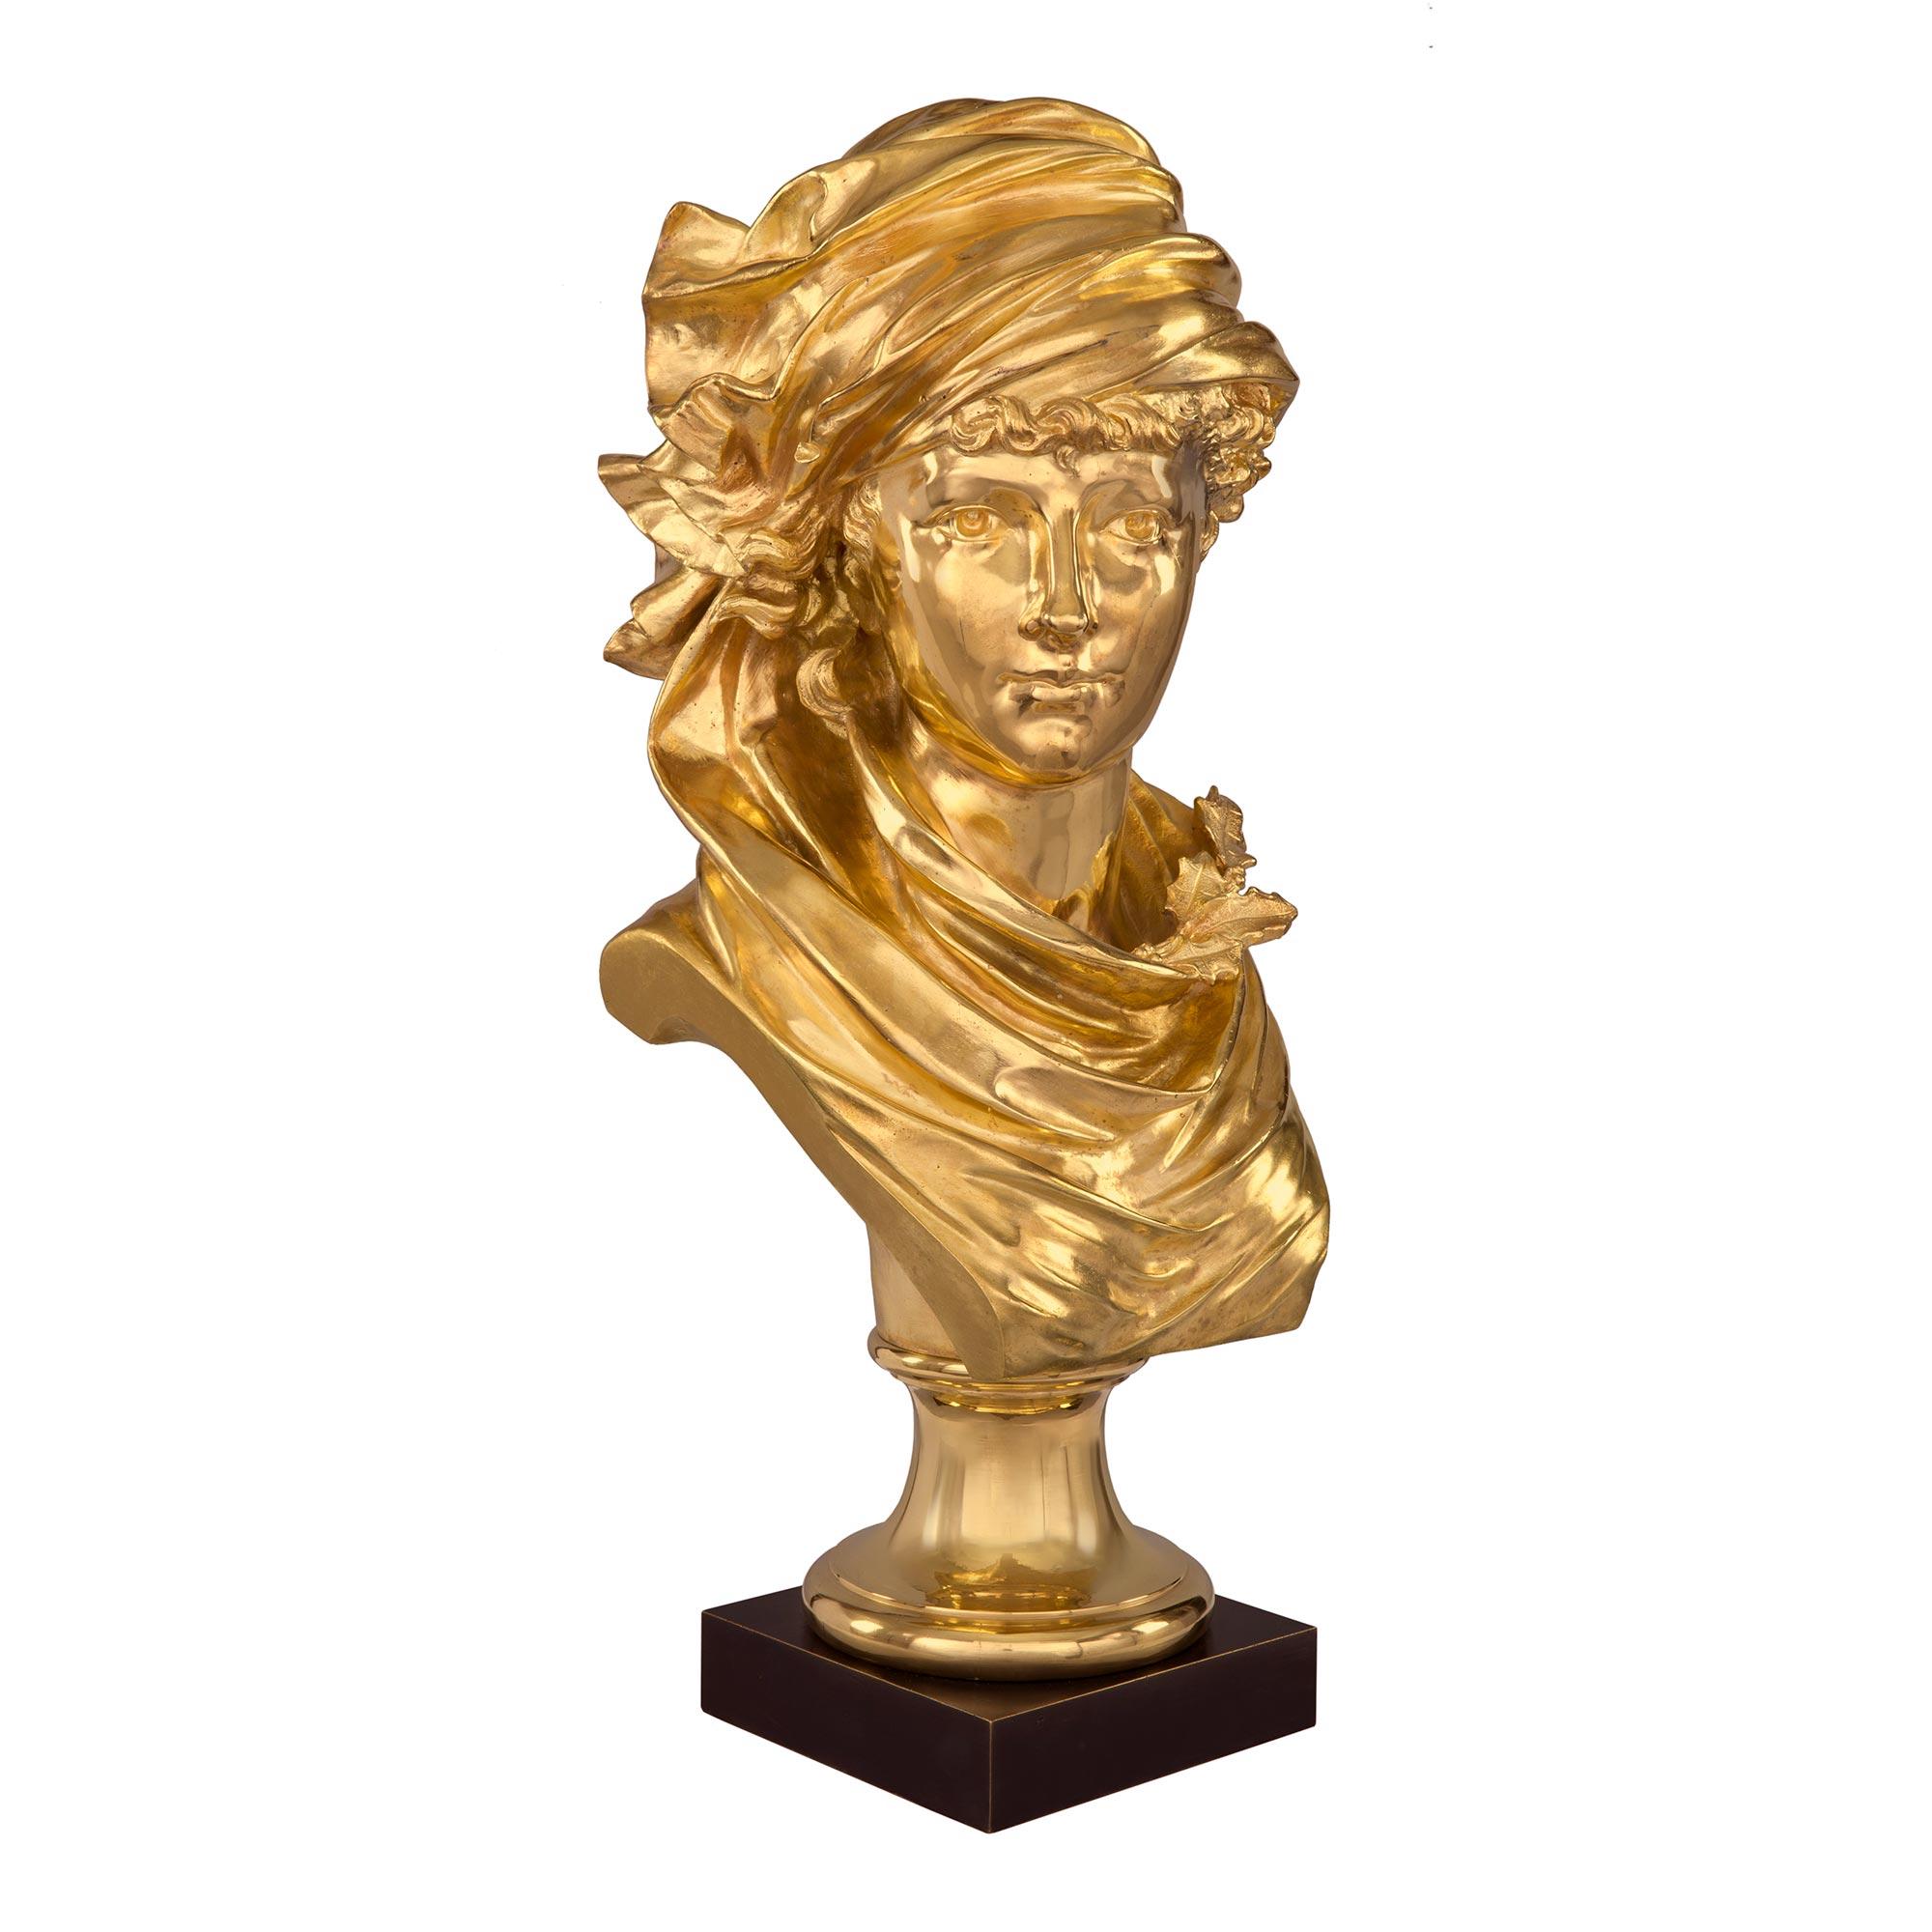 Auffällige französische Ormolu-Büste eines jungen Mädchens aus dem 19. Jahrhundert, signiert A. Rollé. Die Büste steht auf einem quadratischen Sockel aus patinierter Bronze unter einem runden Sockel aus Ormolu mit einer gesprenkelten Umrandung. Das